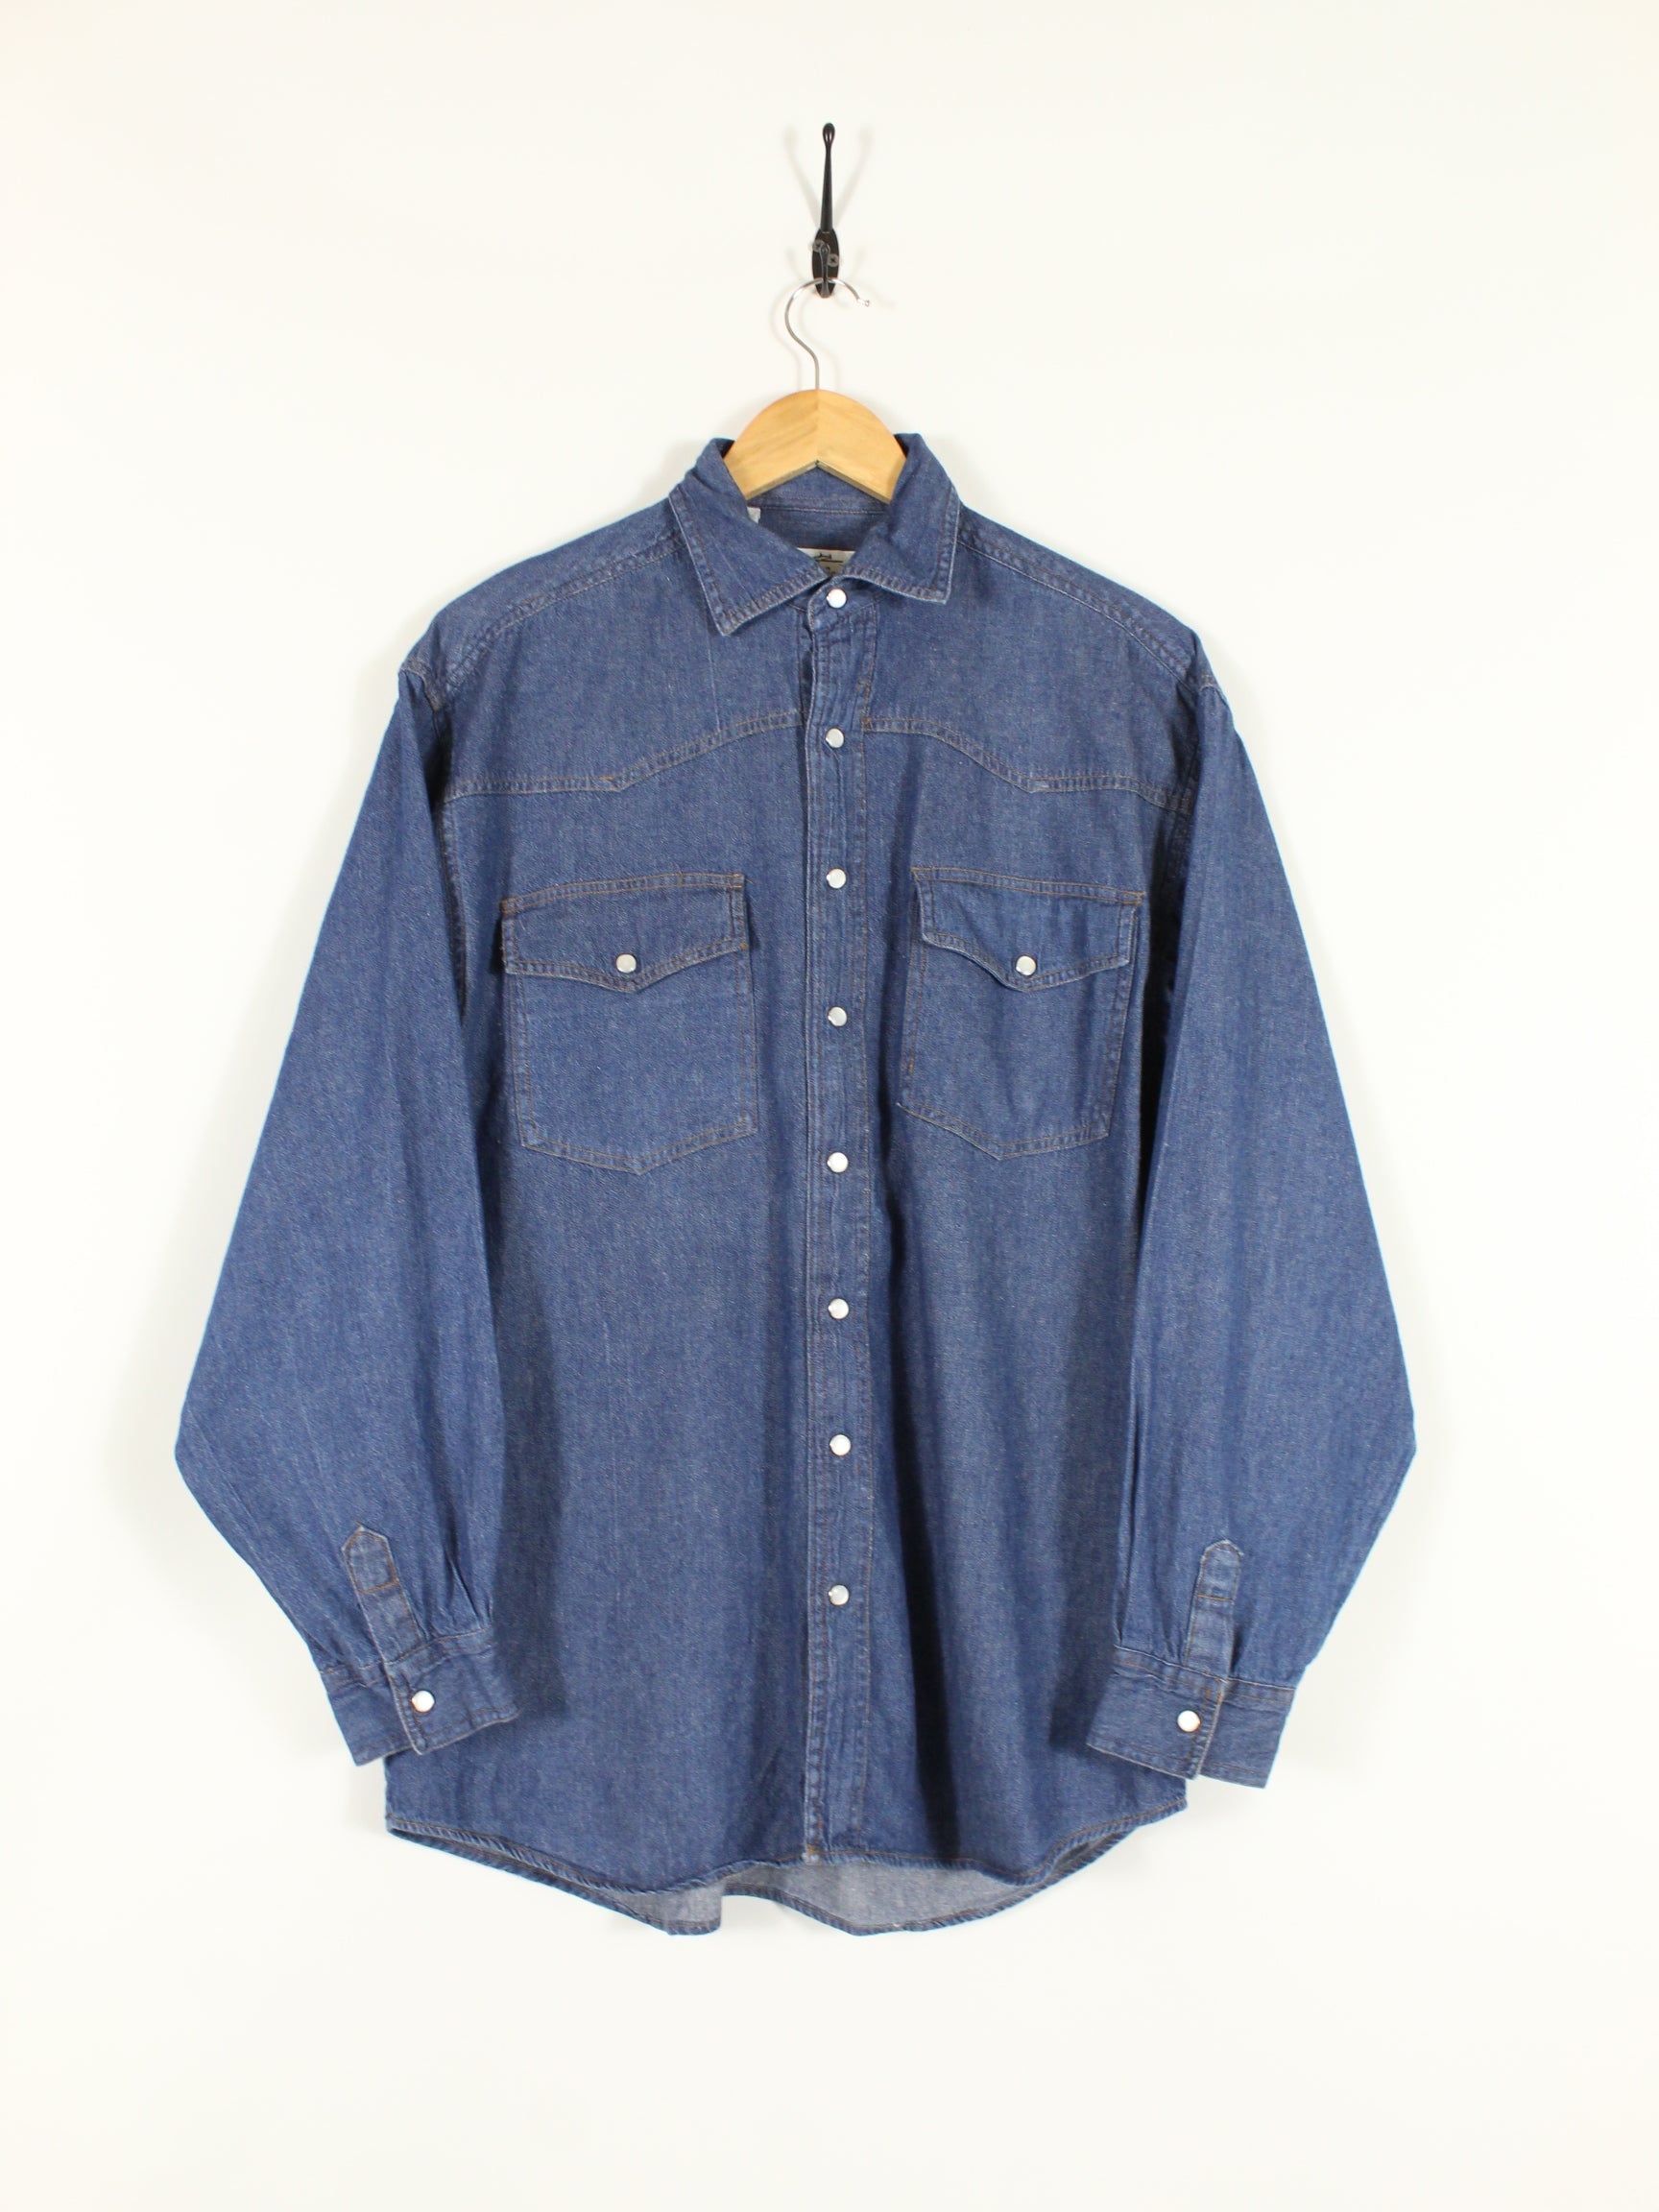 Vintage Denim Shirt (M)